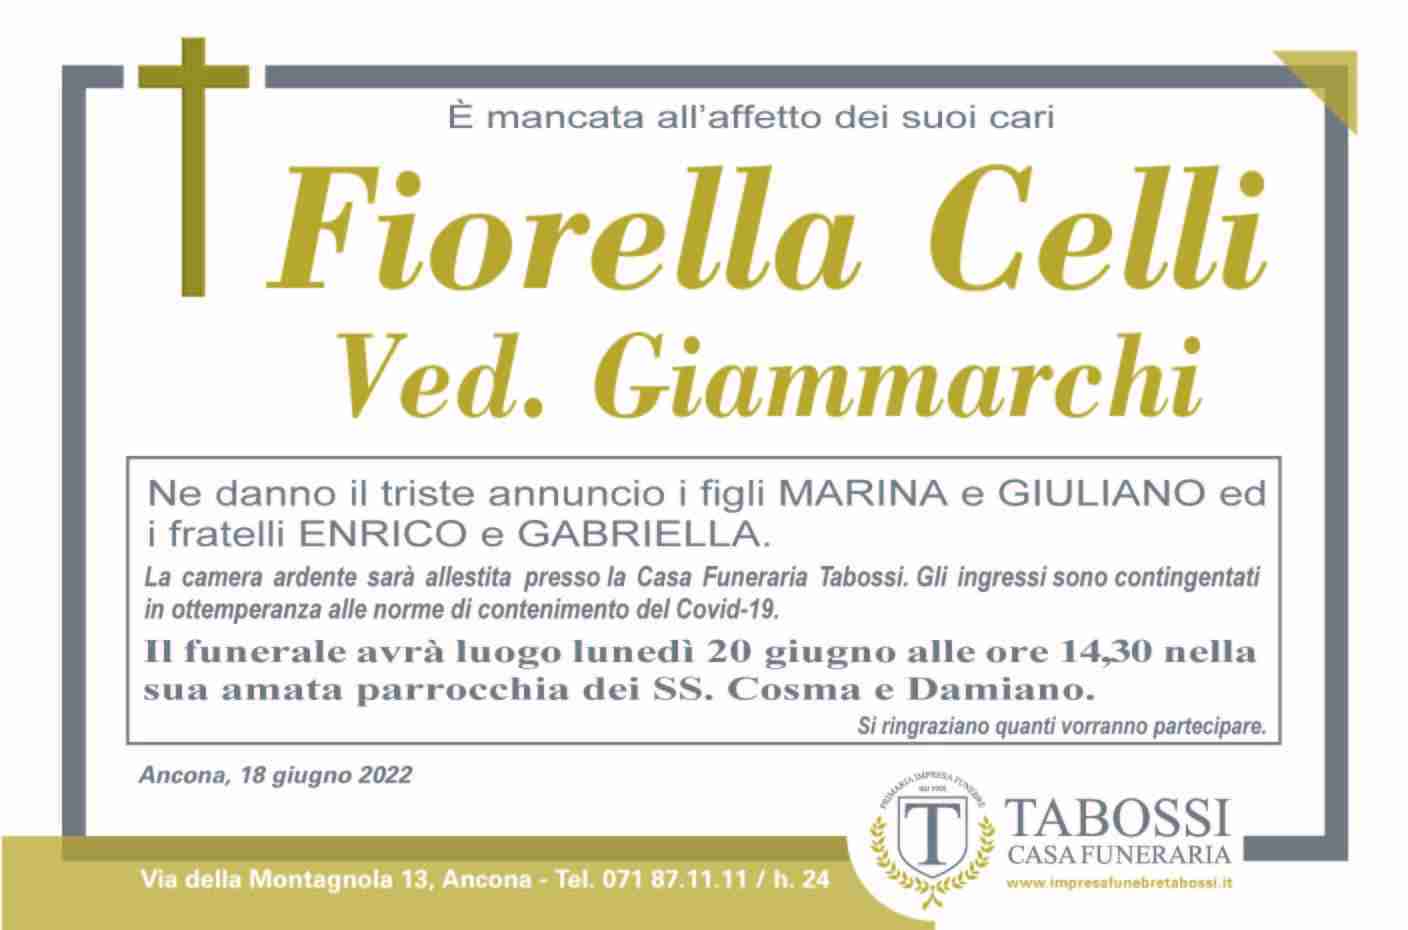 Fiorella Celli